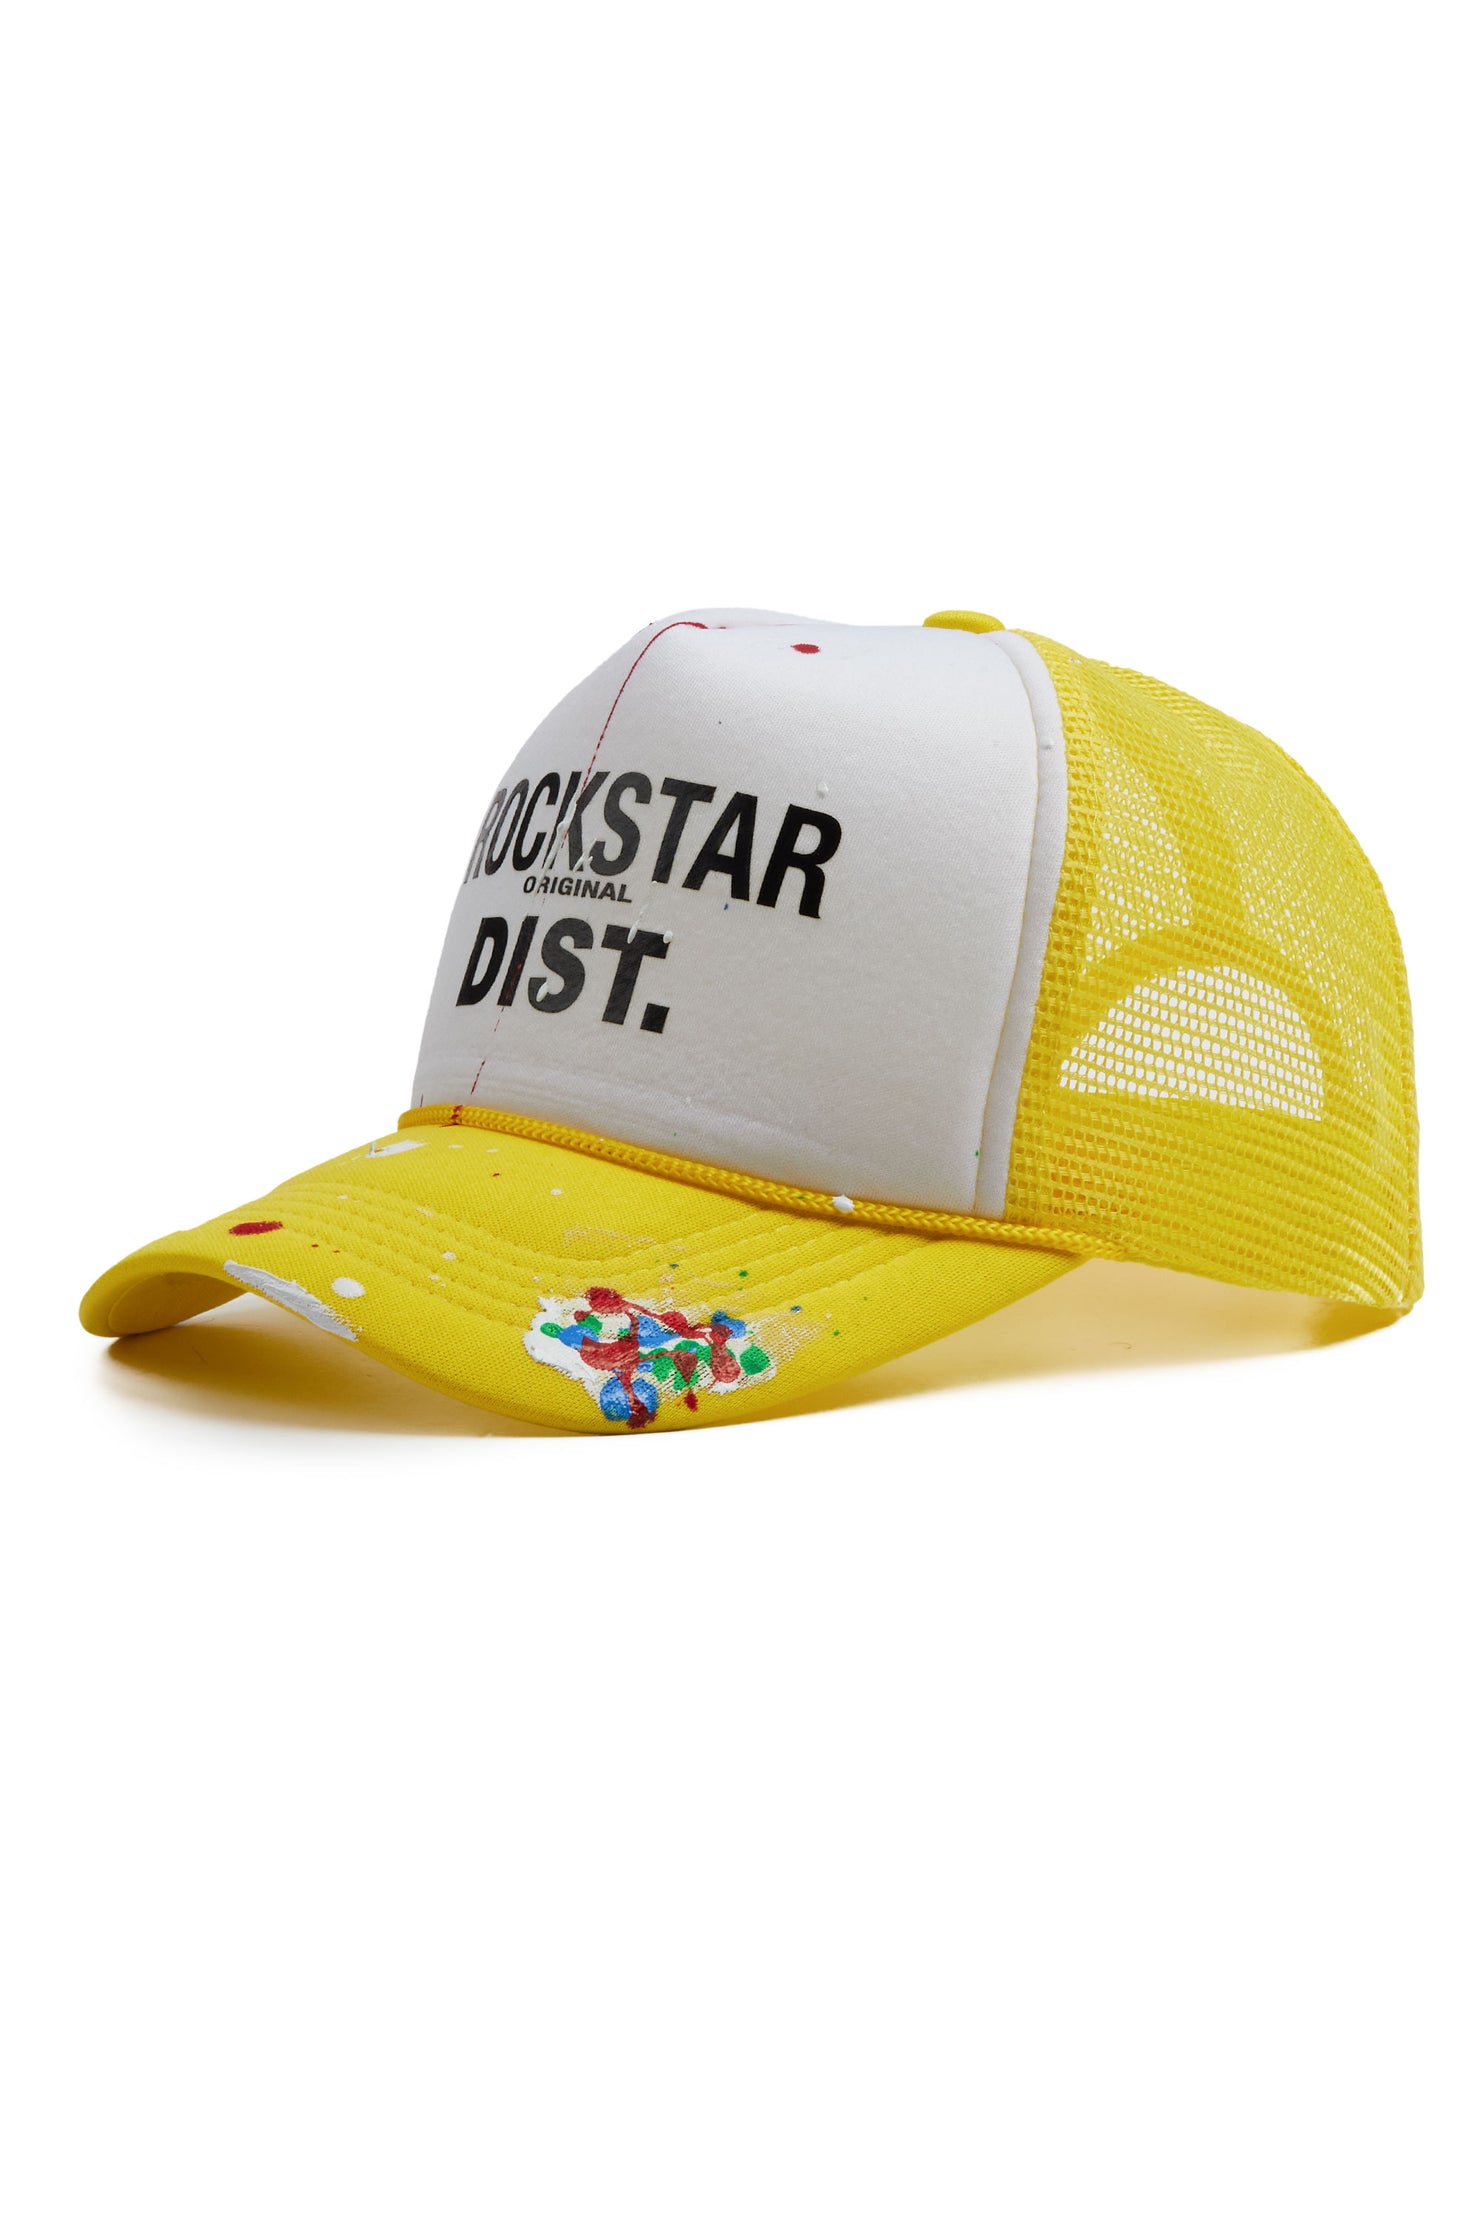 Neptune Yellow/White Trucker Hat